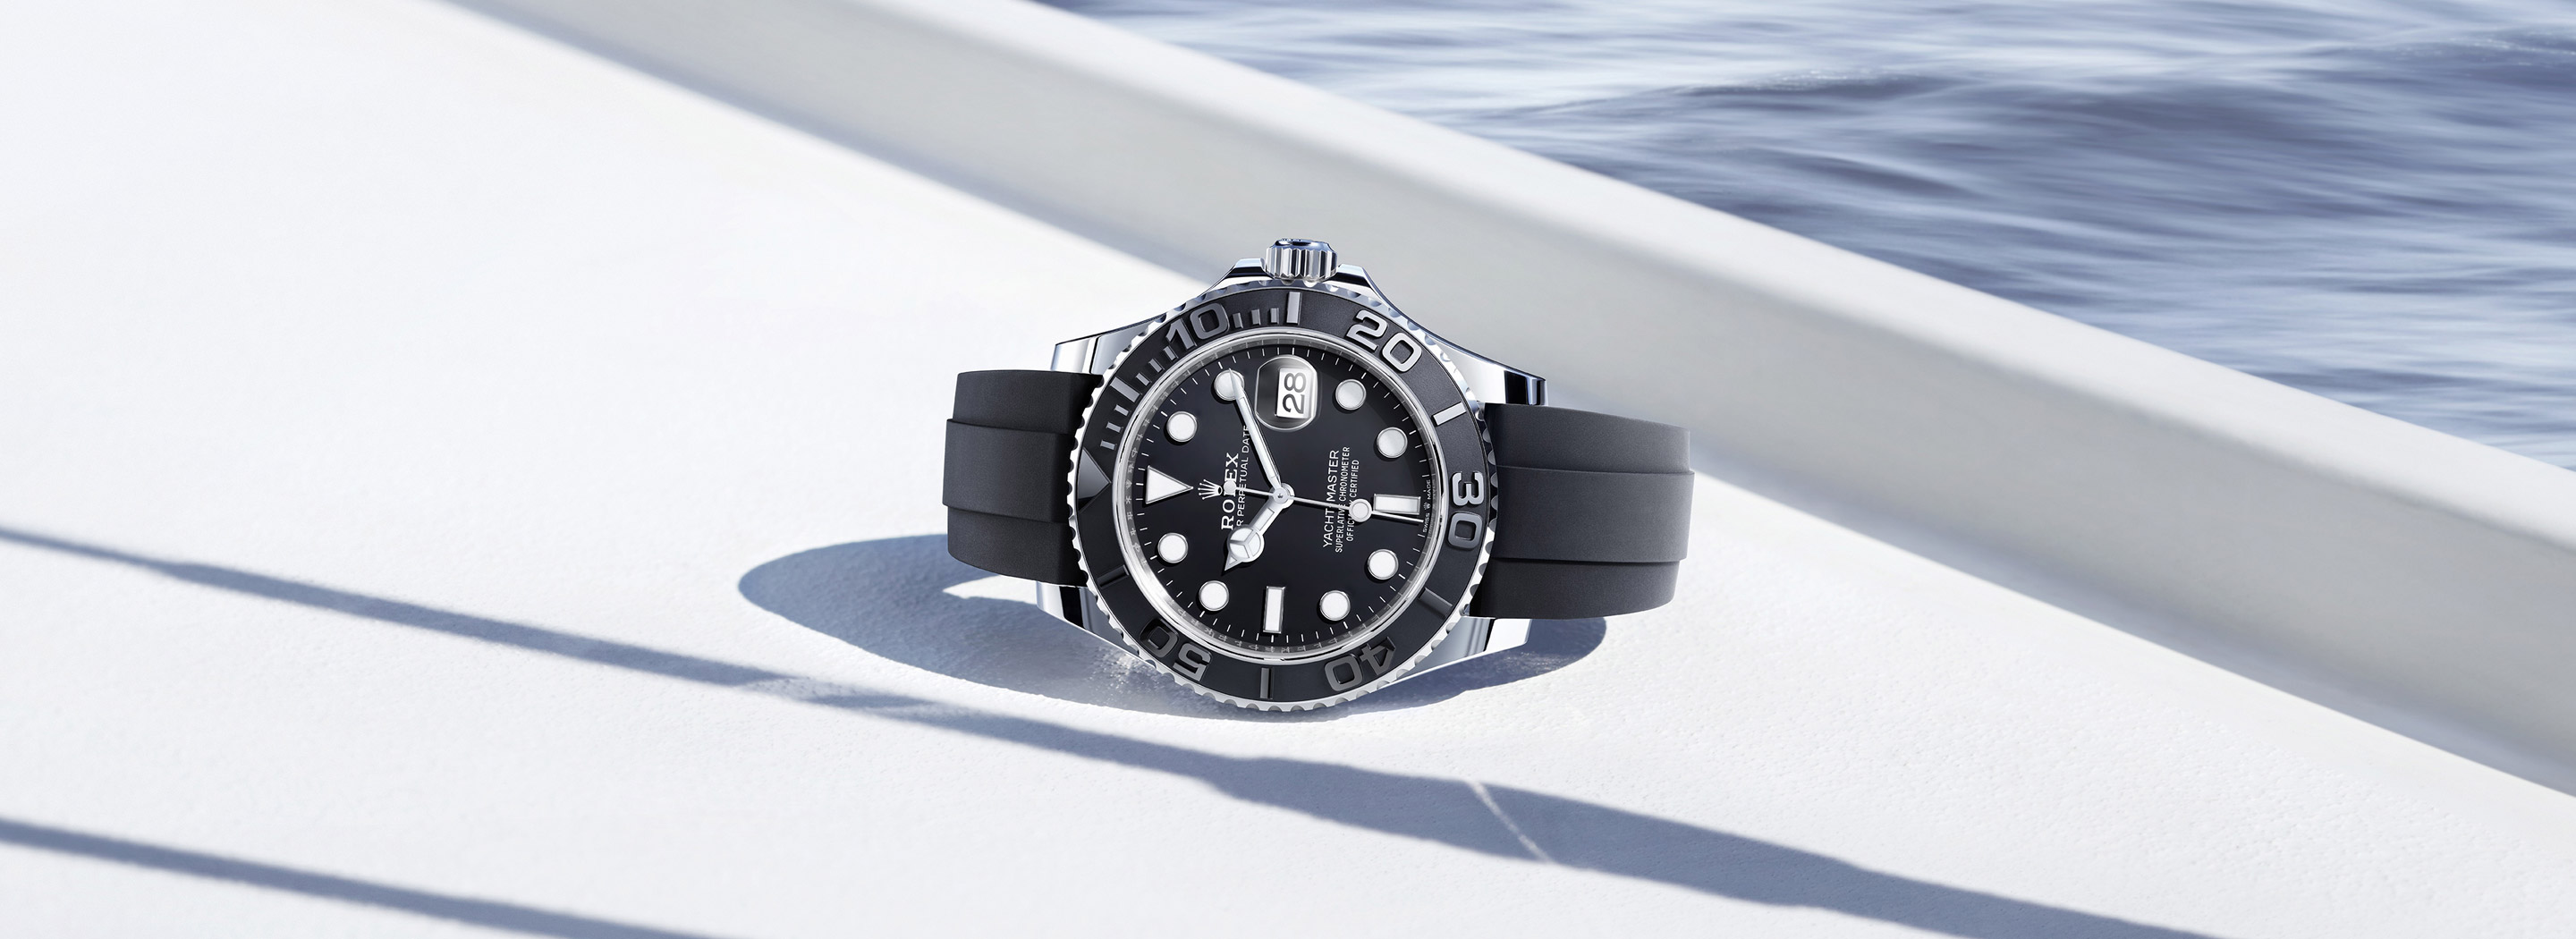 Rolex Yacht-Master watches